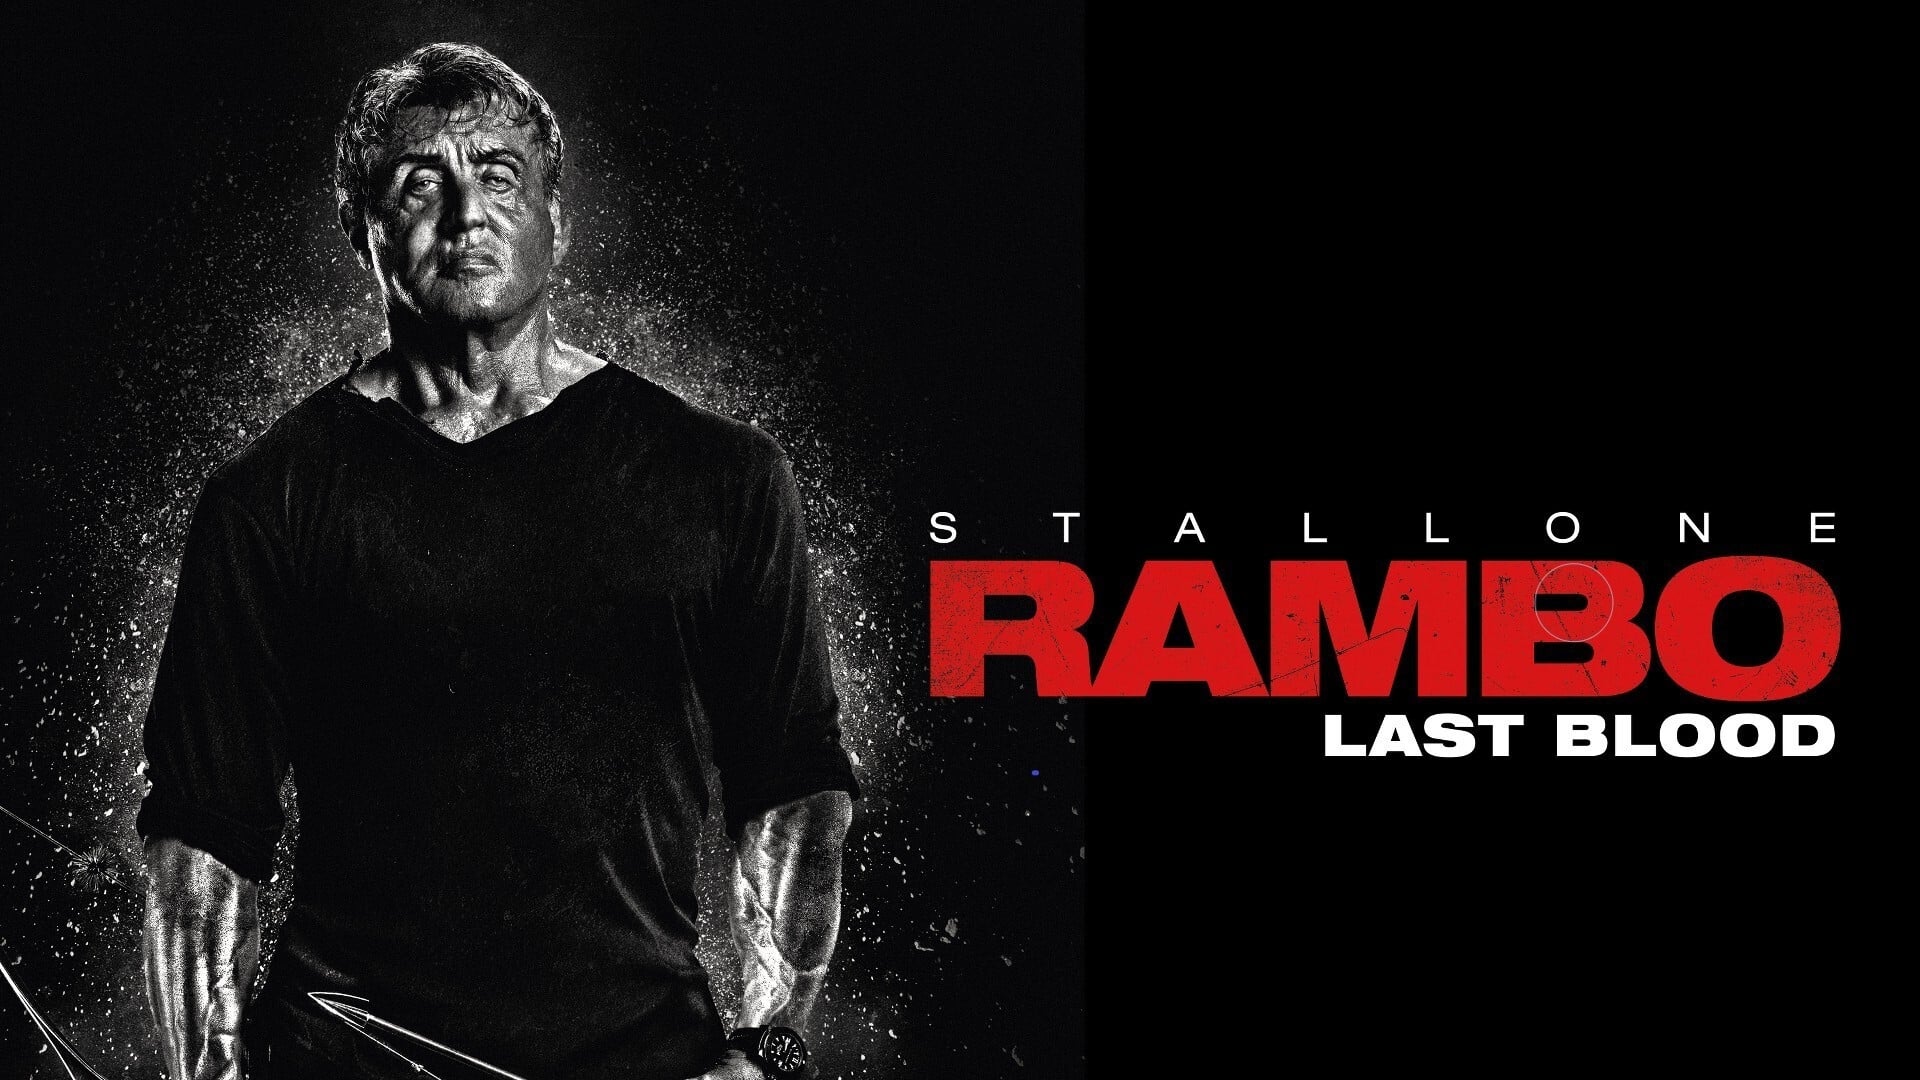 რემბო: უკანასკნელი სისხლი - Rambo: Last Blood / ქართულად, ინგლისურად